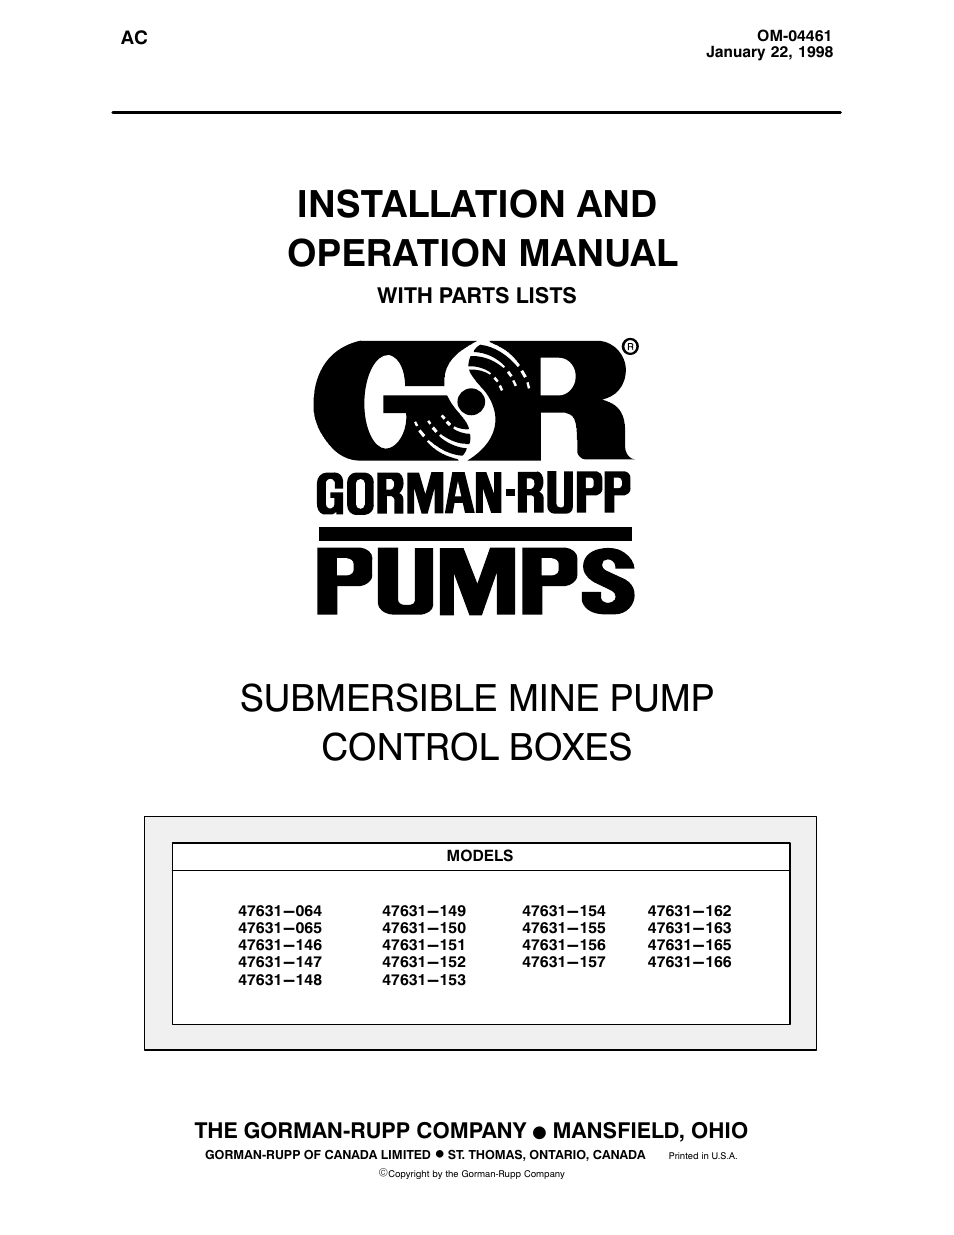 Gorman-Rupp Pumps SM4G1-X30 460/3 1002211 thru 1241783 User Manual | 18 pages